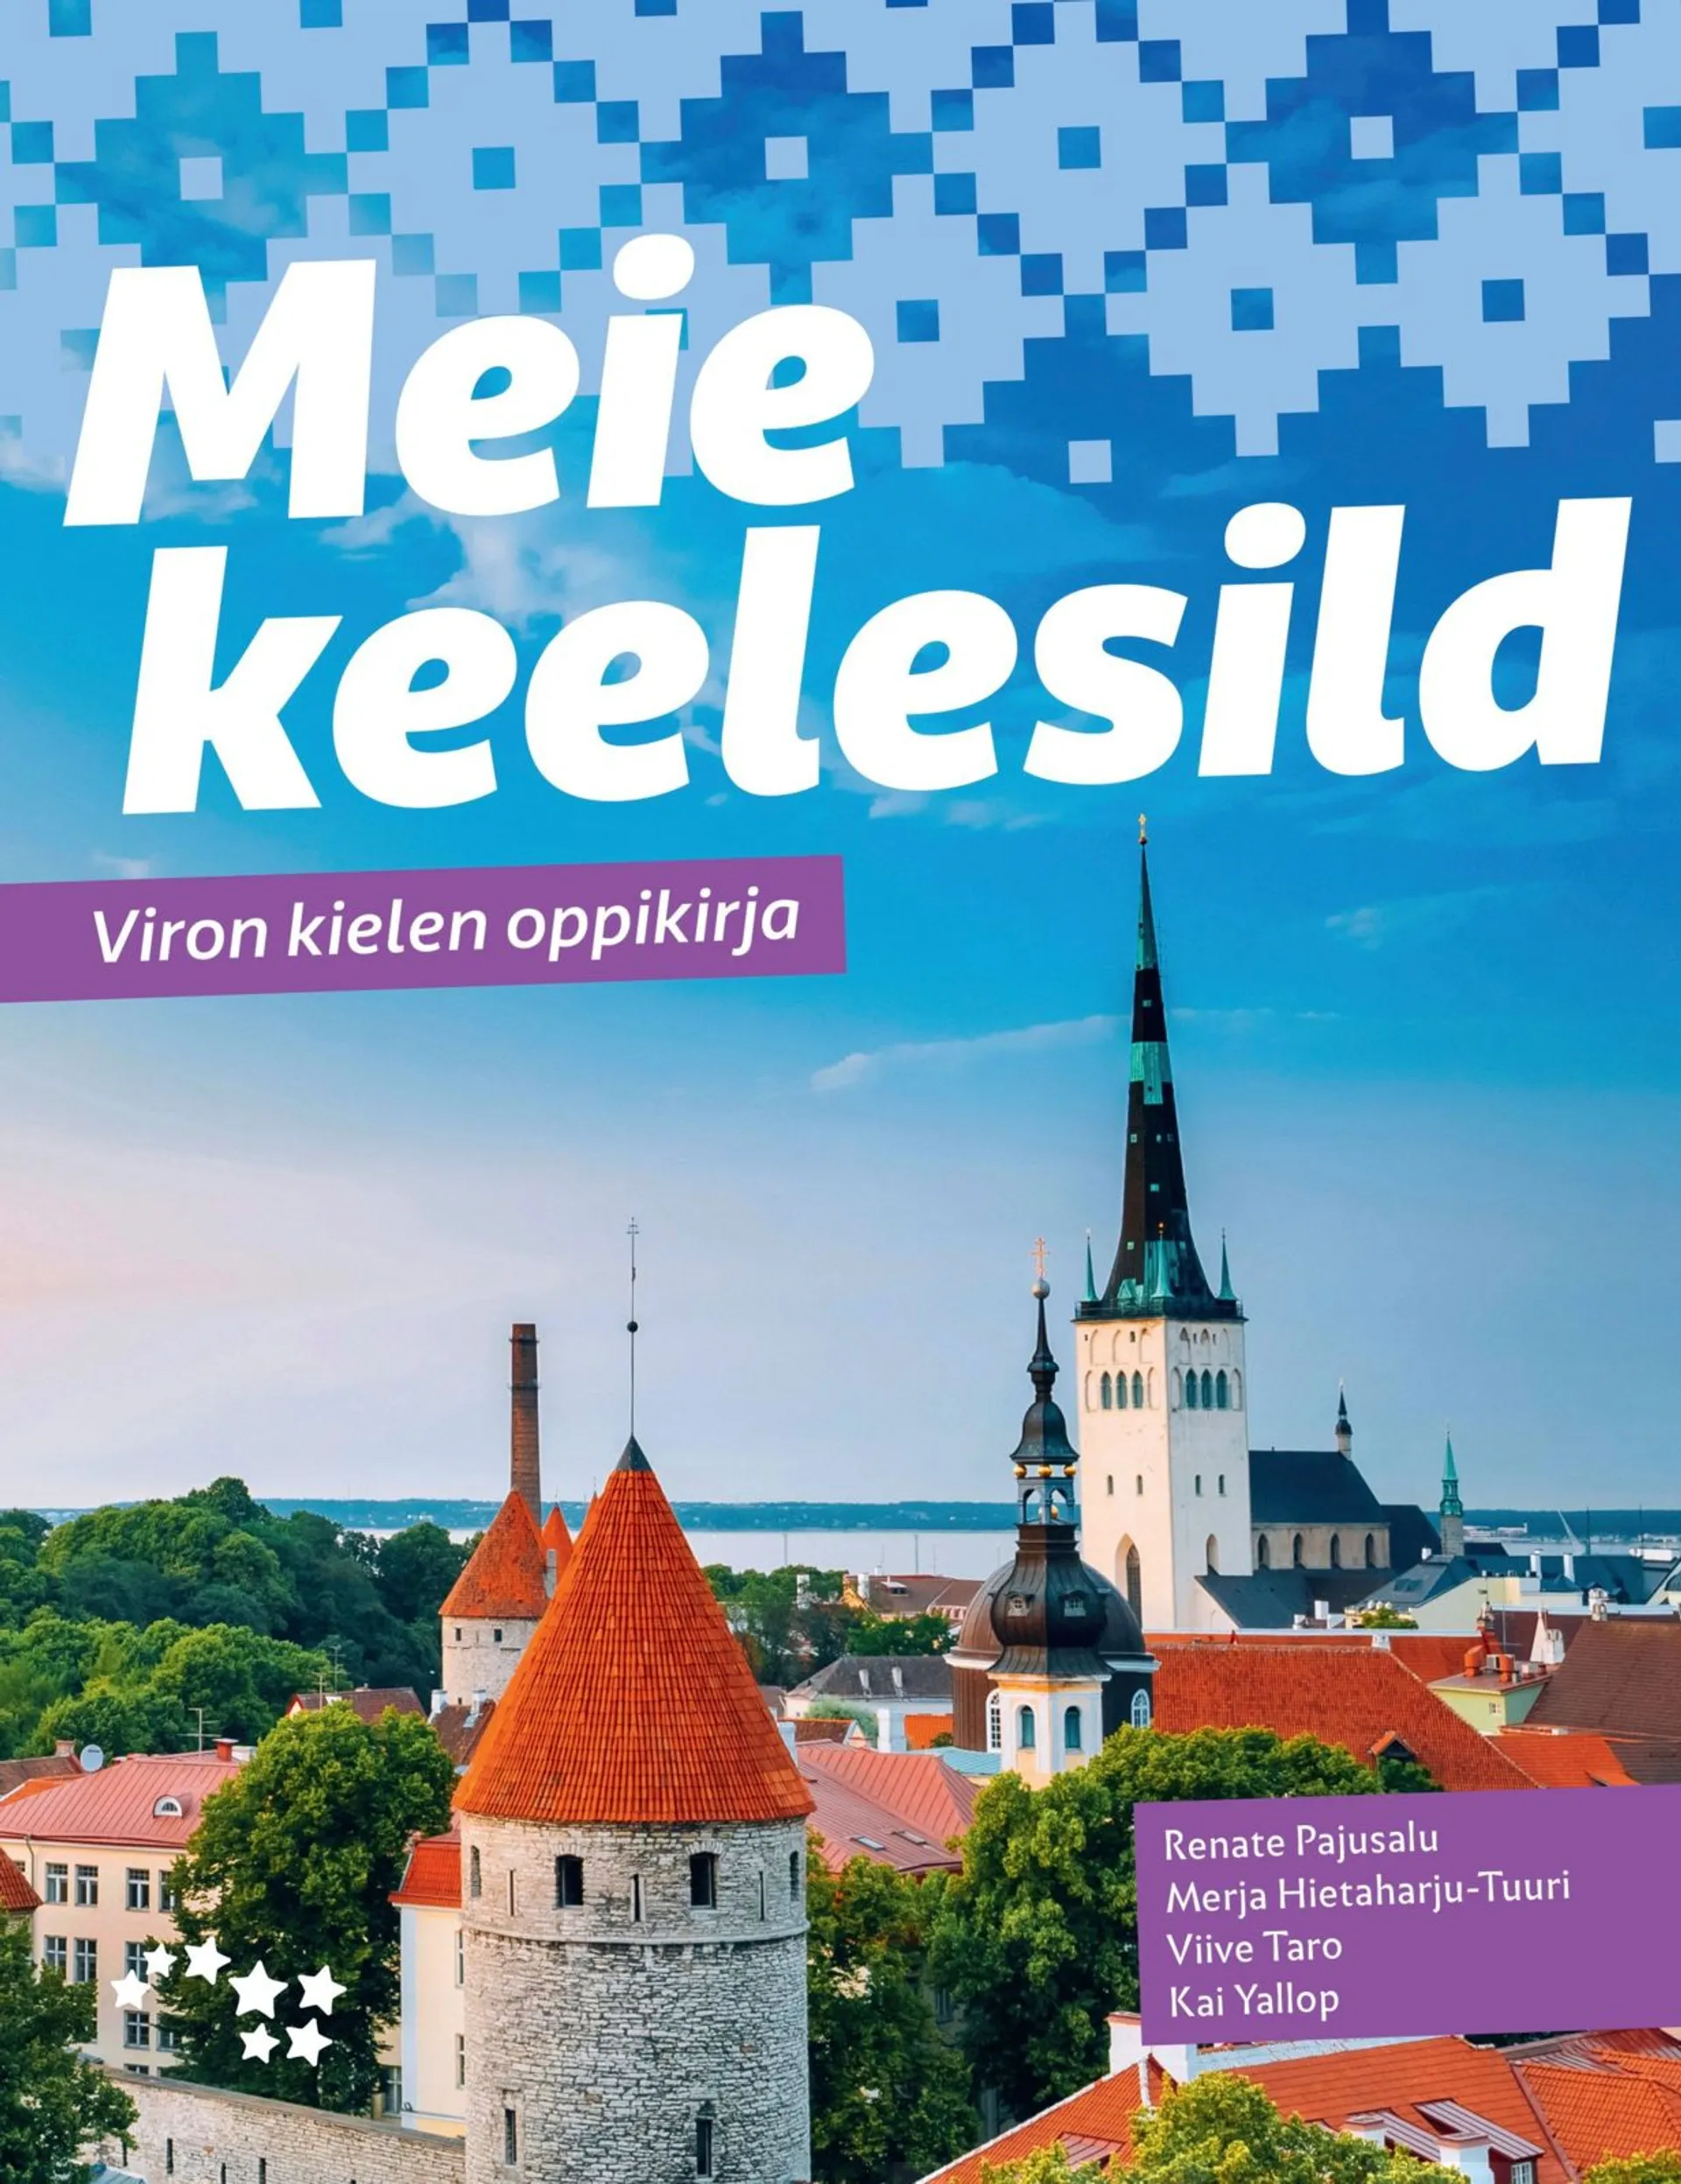 Pajusalu, Meie keelesild - Viron kielen oppikirja